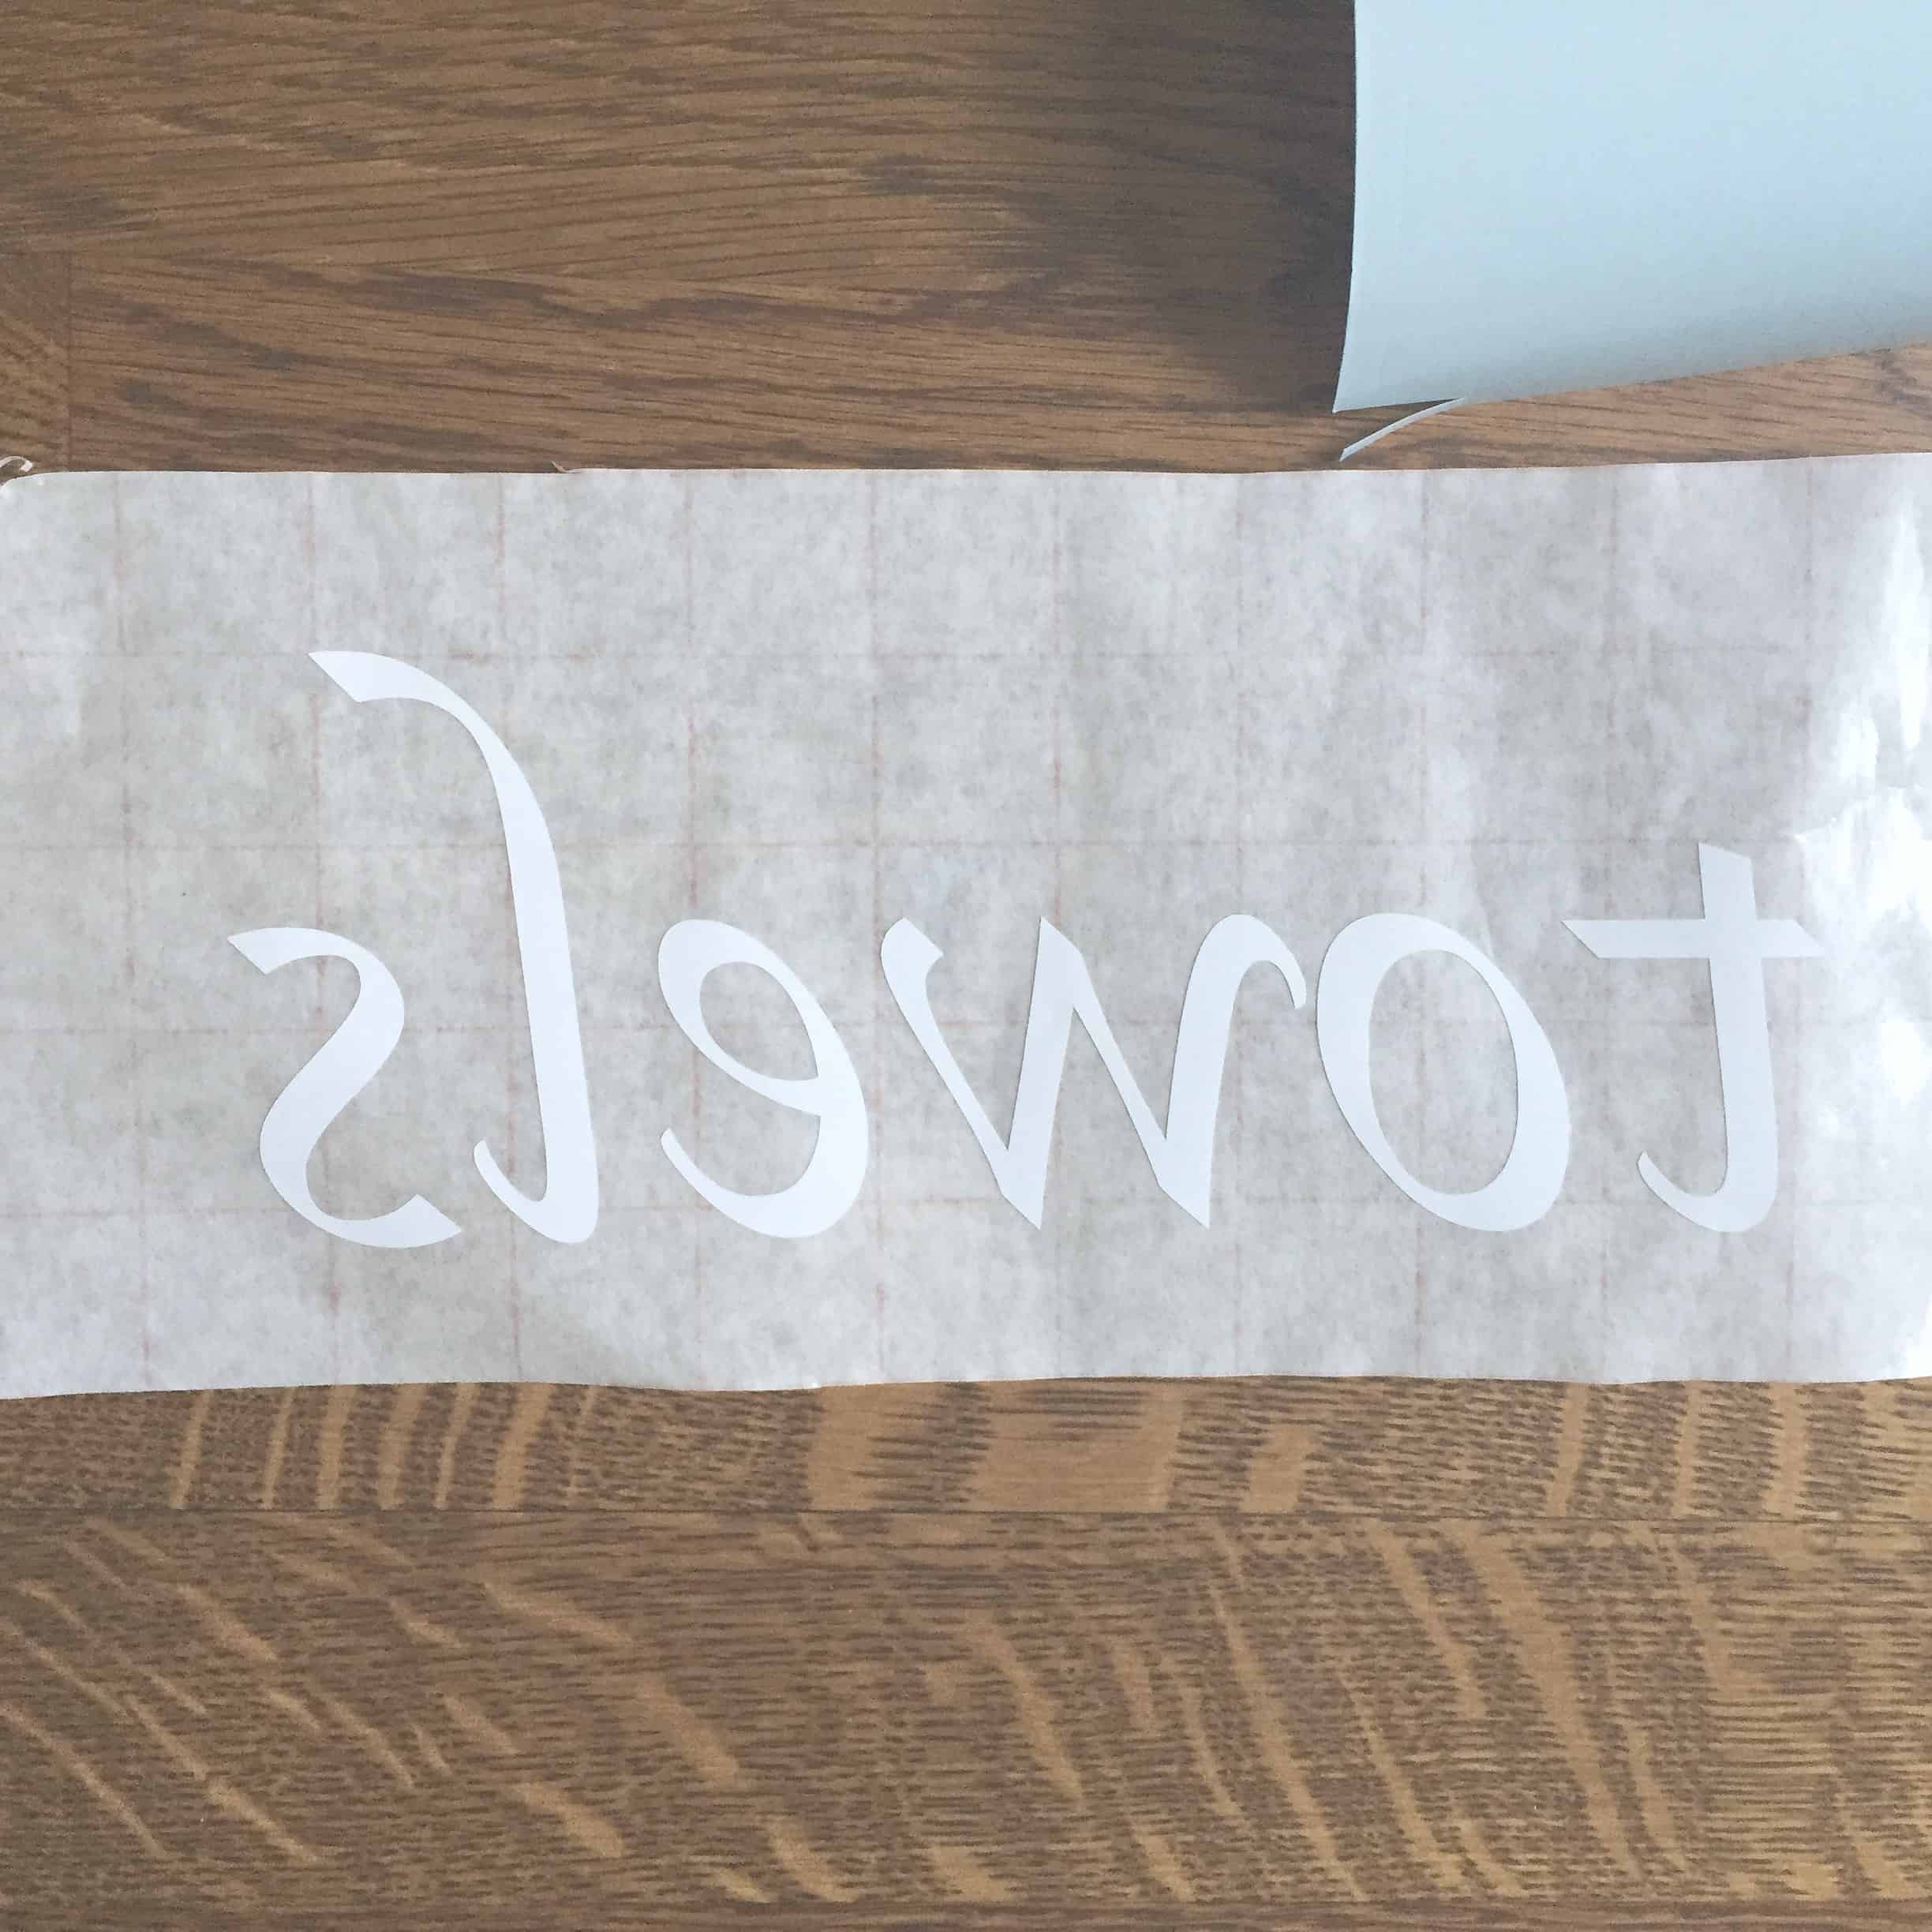 Transferring vinyl lettering to sticky transfer paper